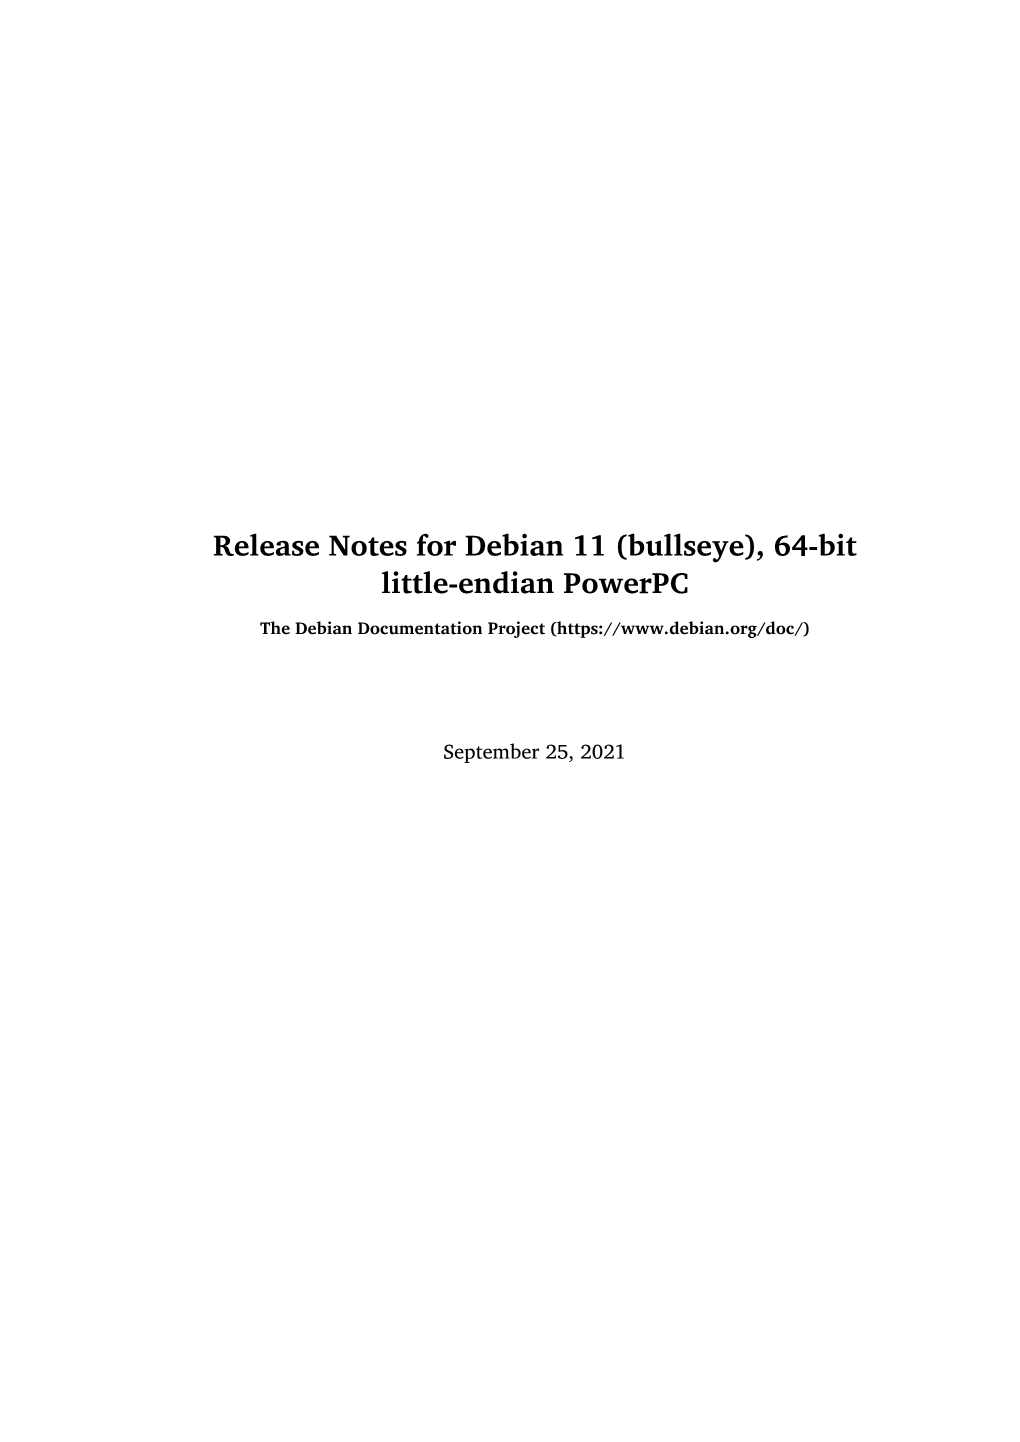 Release Notes for Debian 11 (Bullseye), 64-Bit Little-Endian Powerpc